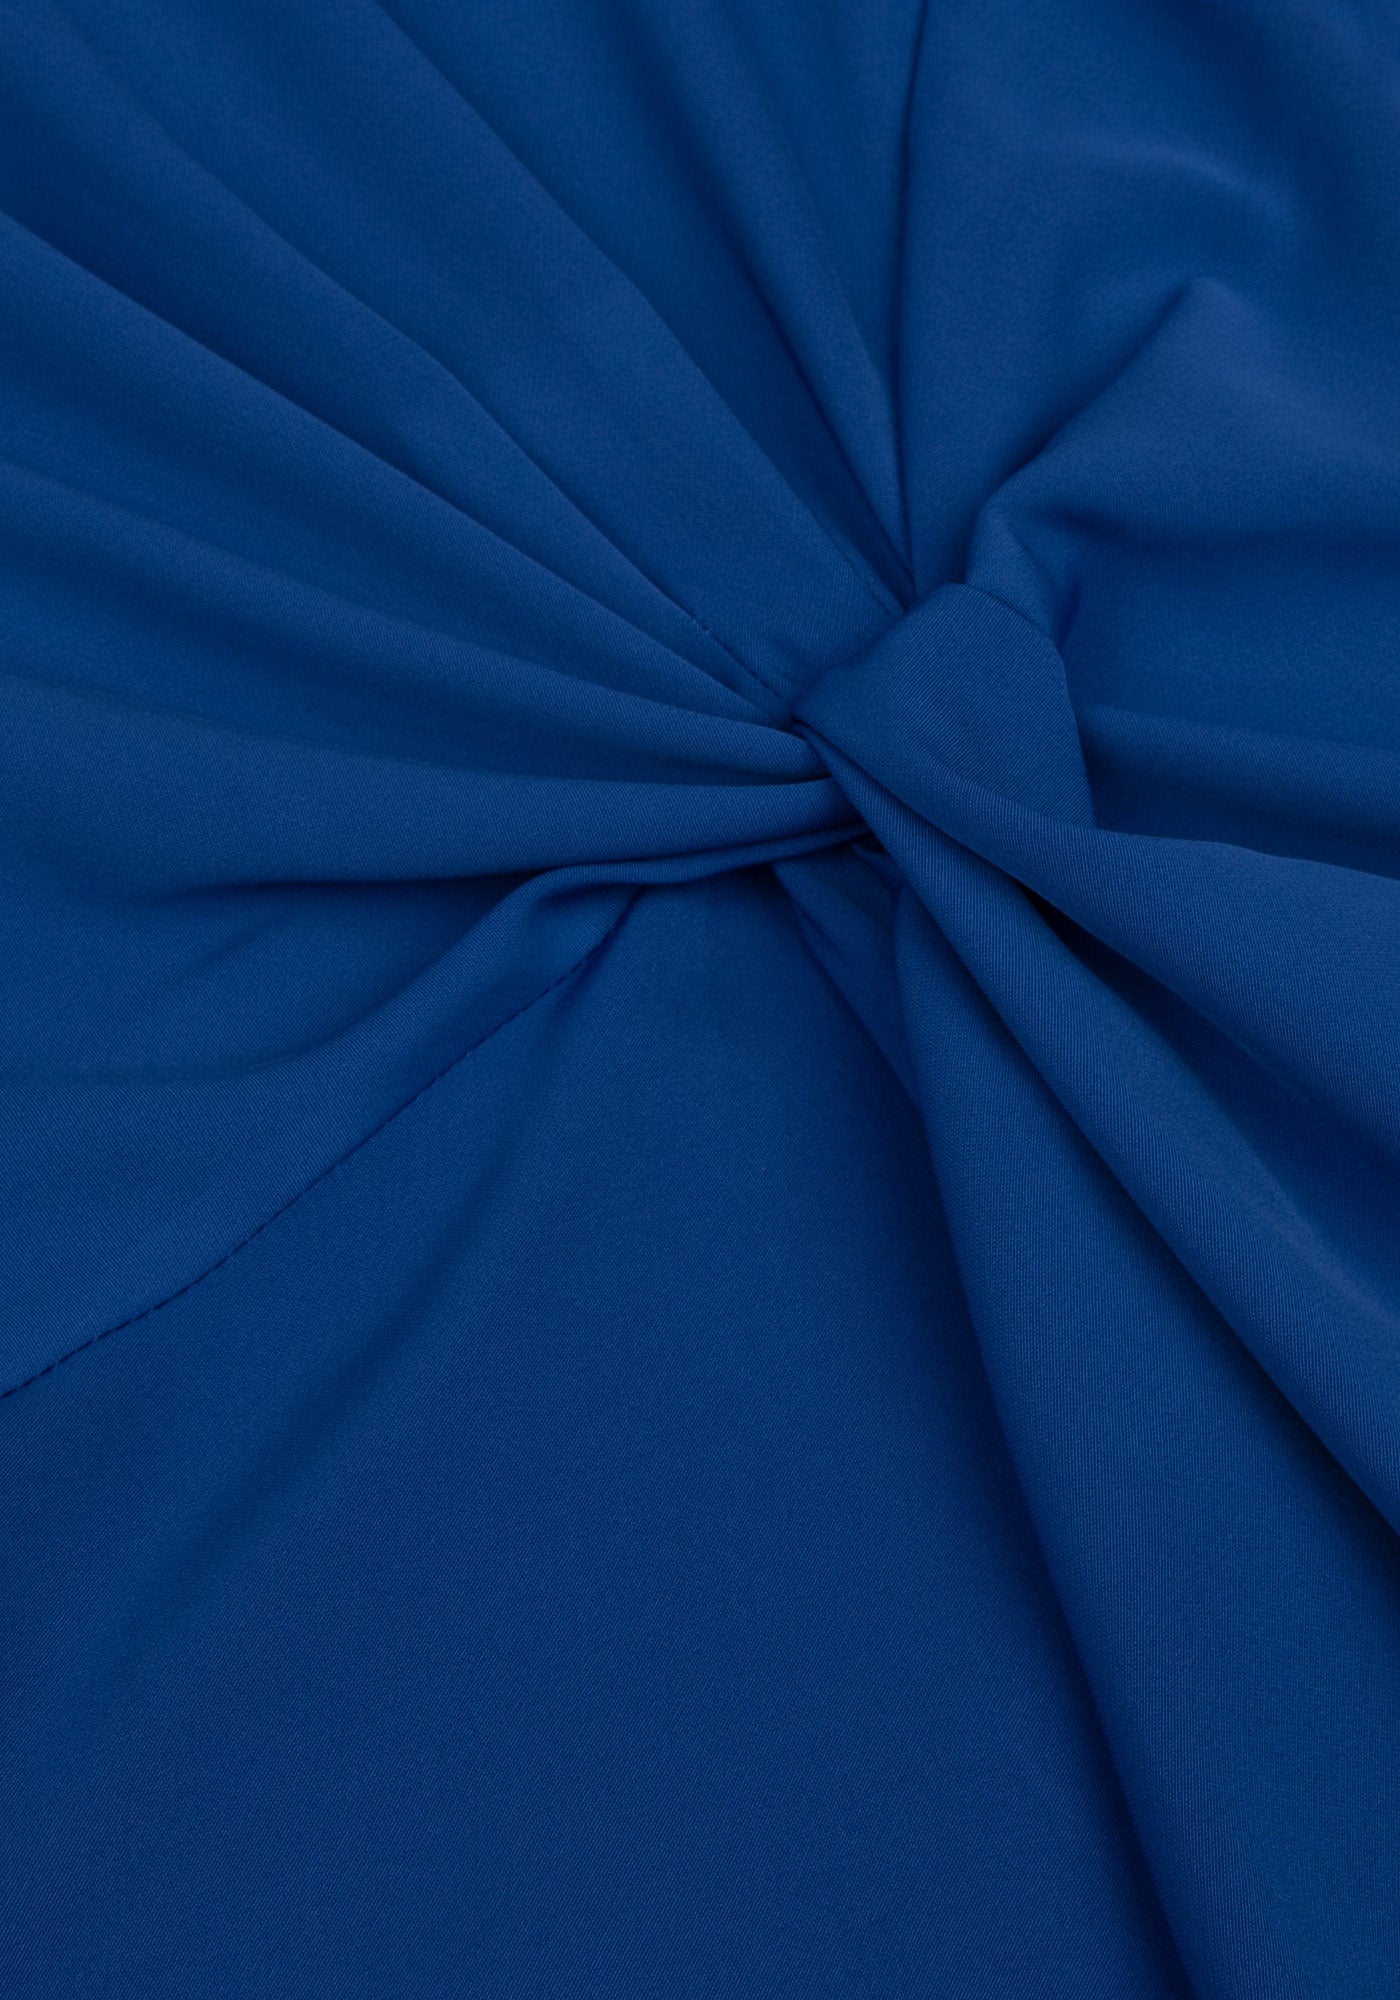 Официална Дамска Рокля с Възел в Кралско син цвят